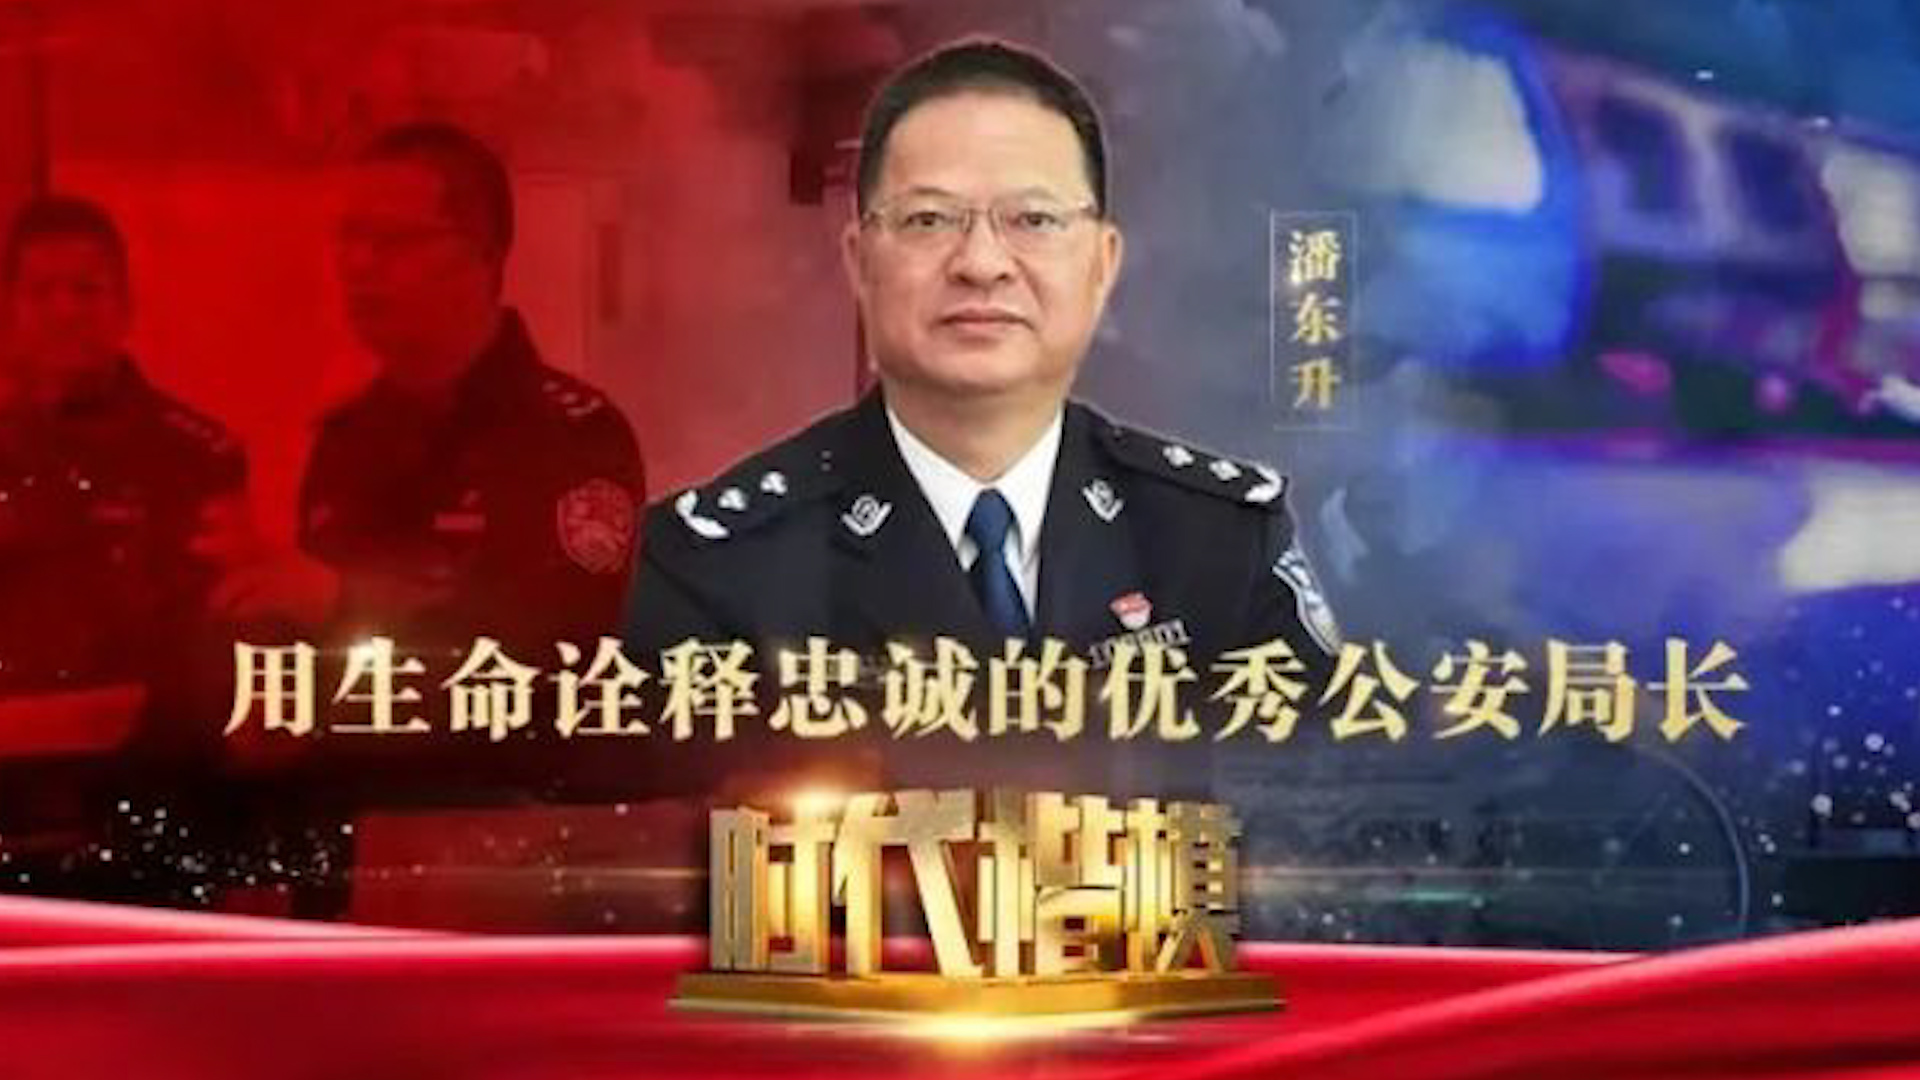 斯人已逝热血长存不赴饭局的福州公安局长潘东升因公殉职今日被追授